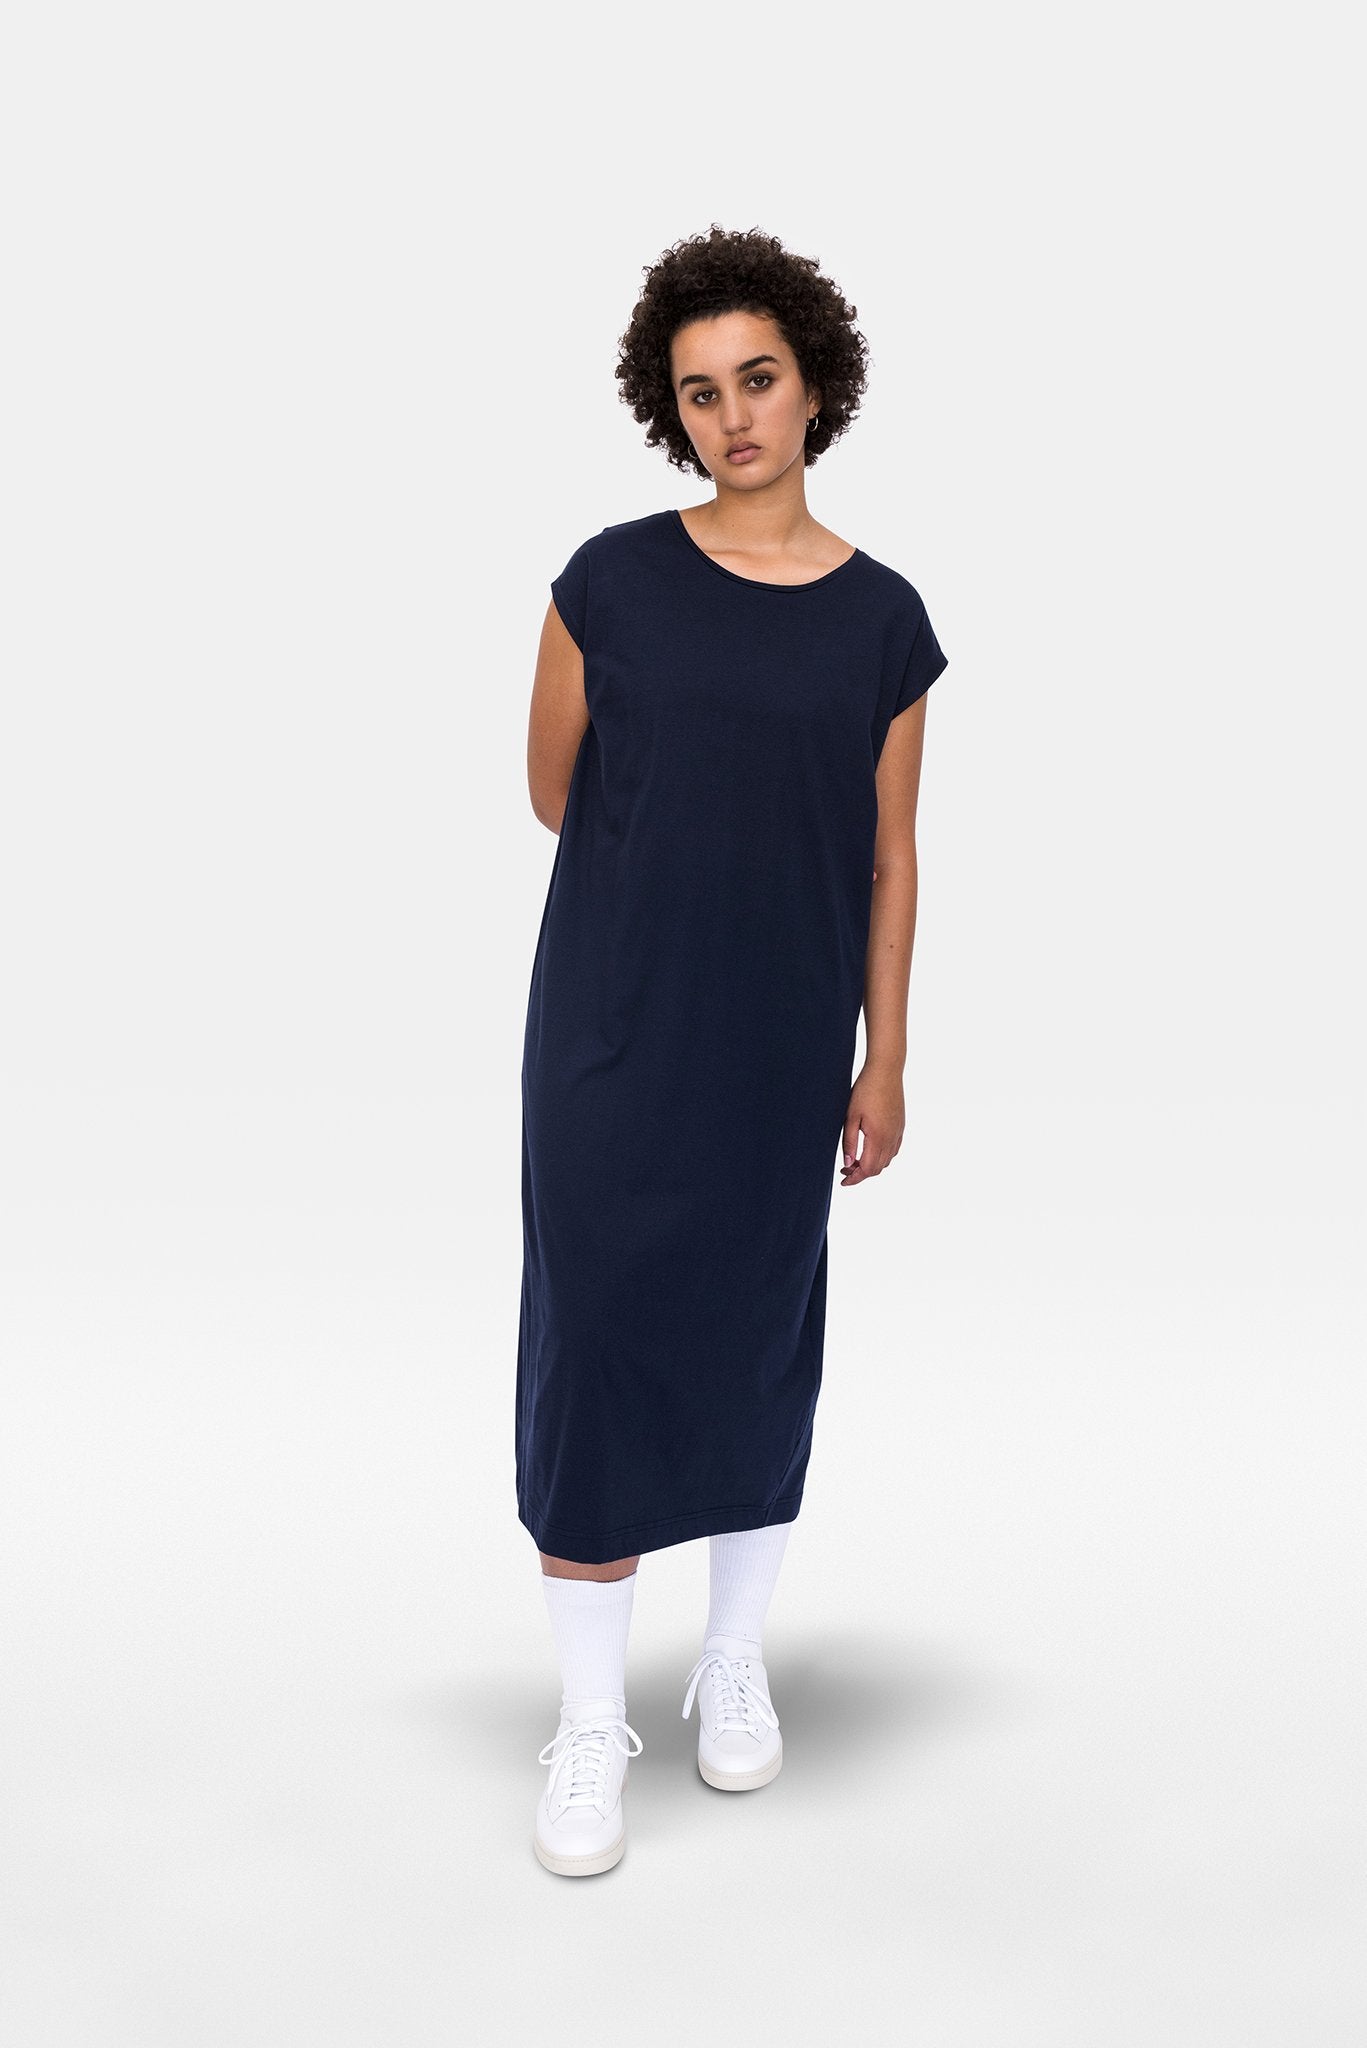 A.BCH A.07 Navy T-Shirt Dress in Organic Cotton